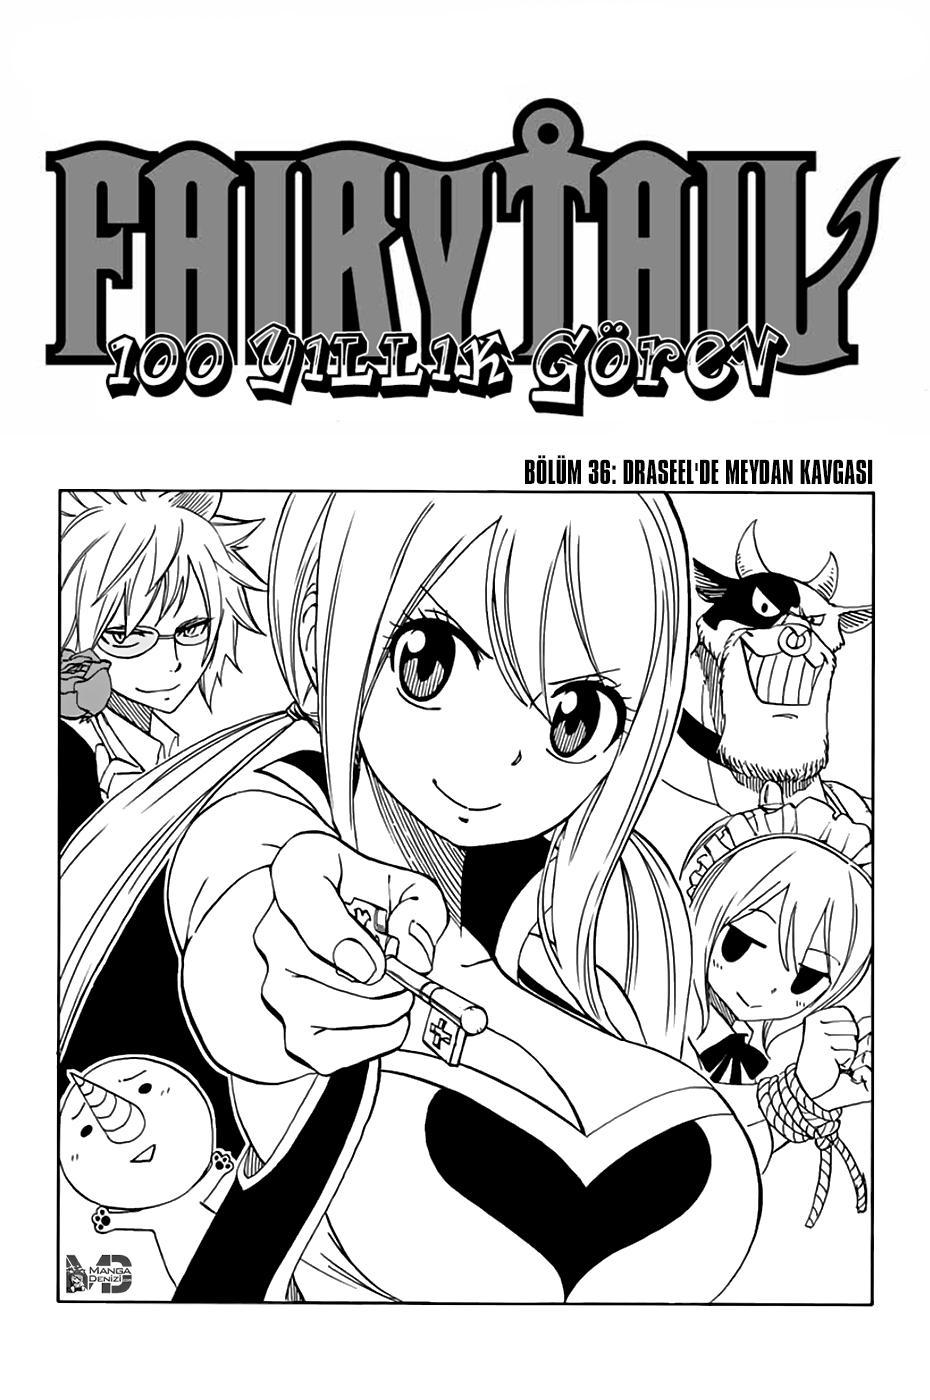 Fairy Tail: 100 Years Quest mangasının 036 bölümünün 2. sayfasını okuyorsunuz.